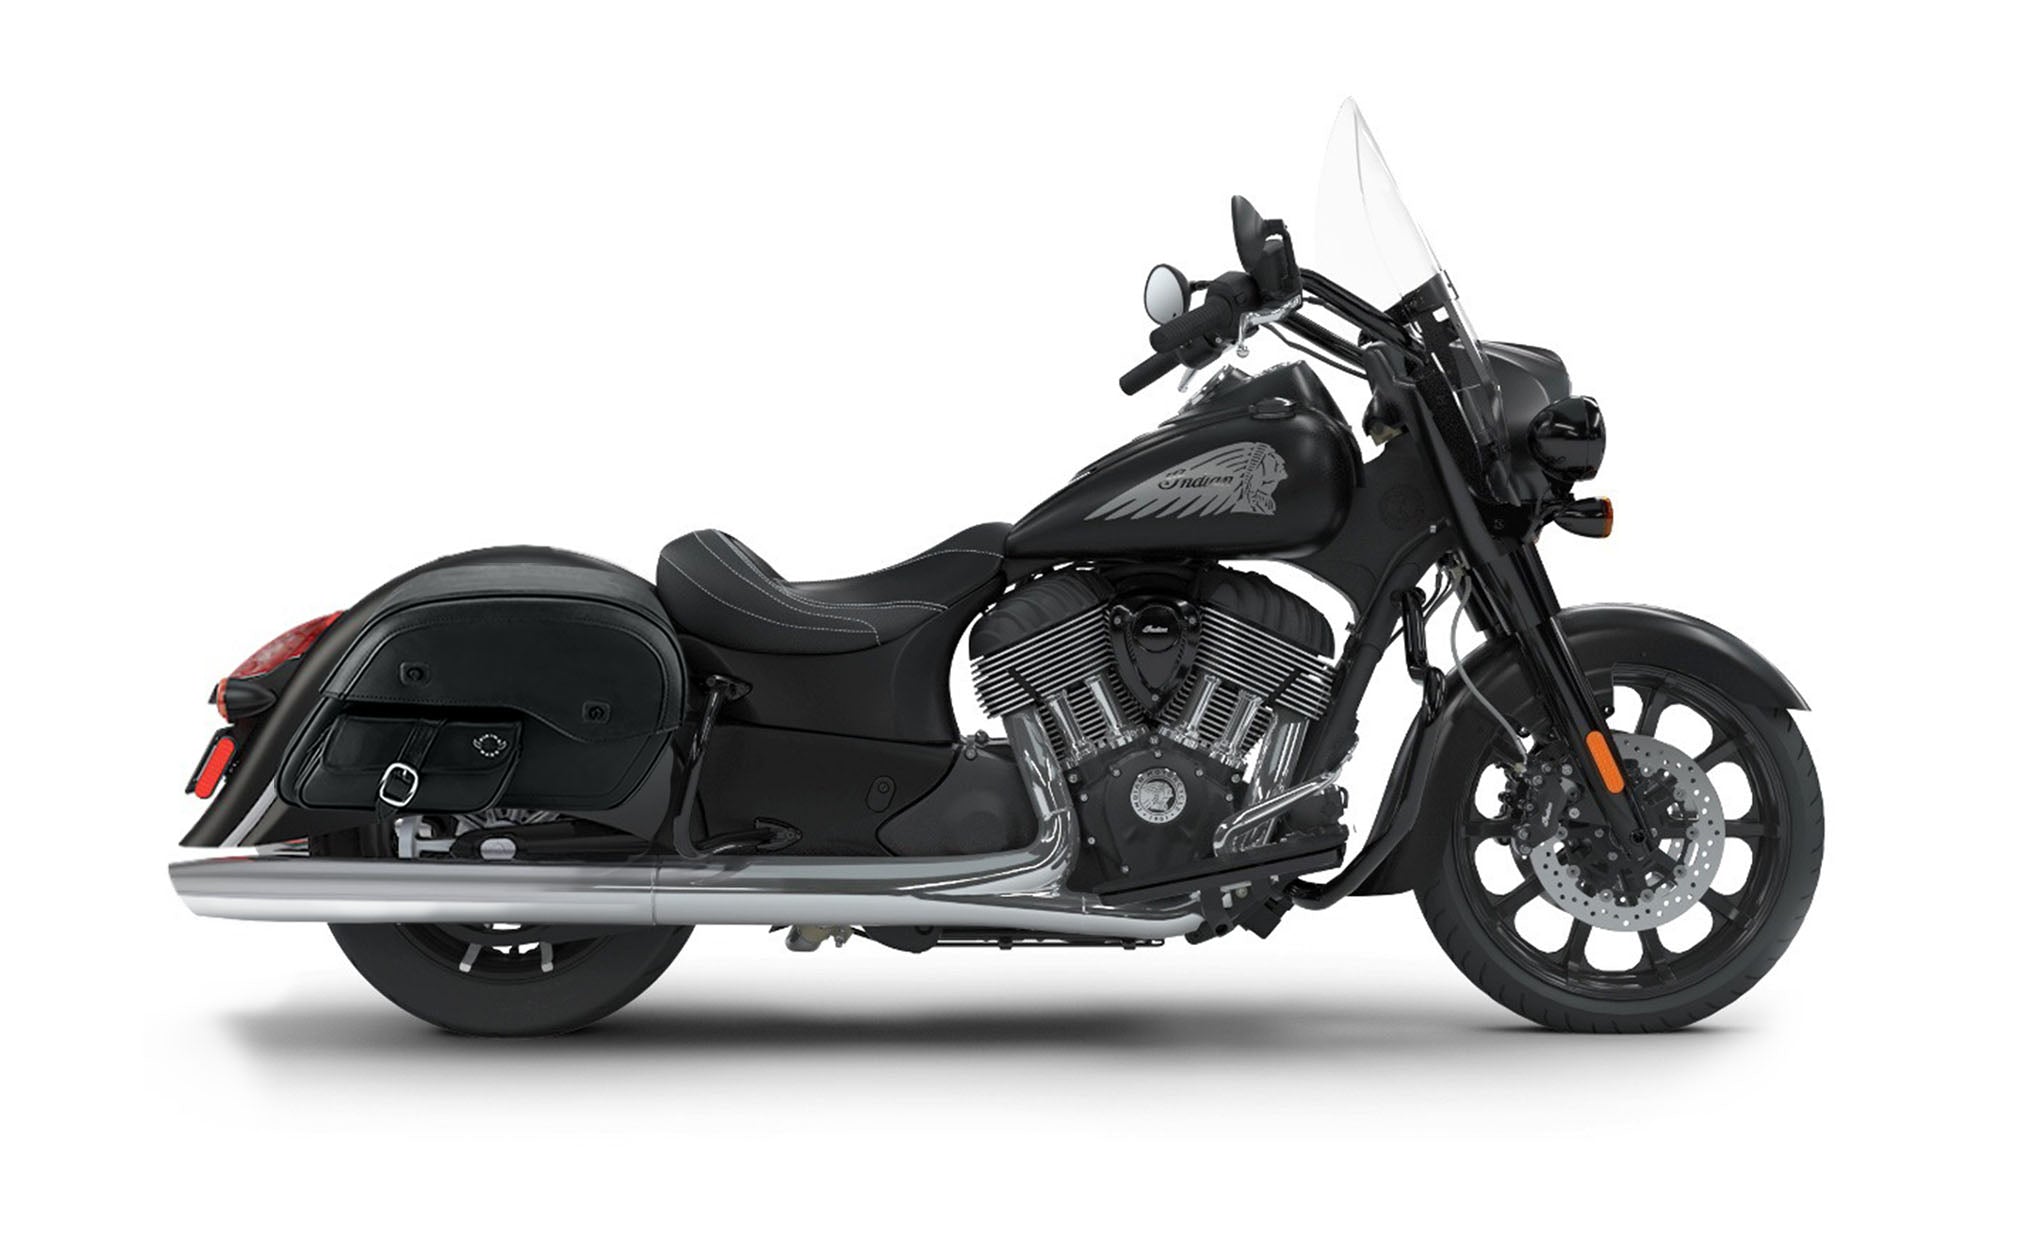 Viking Dweller Side Pocket Large Indian Springfield Darkhorse Leather Motorcycle Saddlebags on Bike Photo @expand